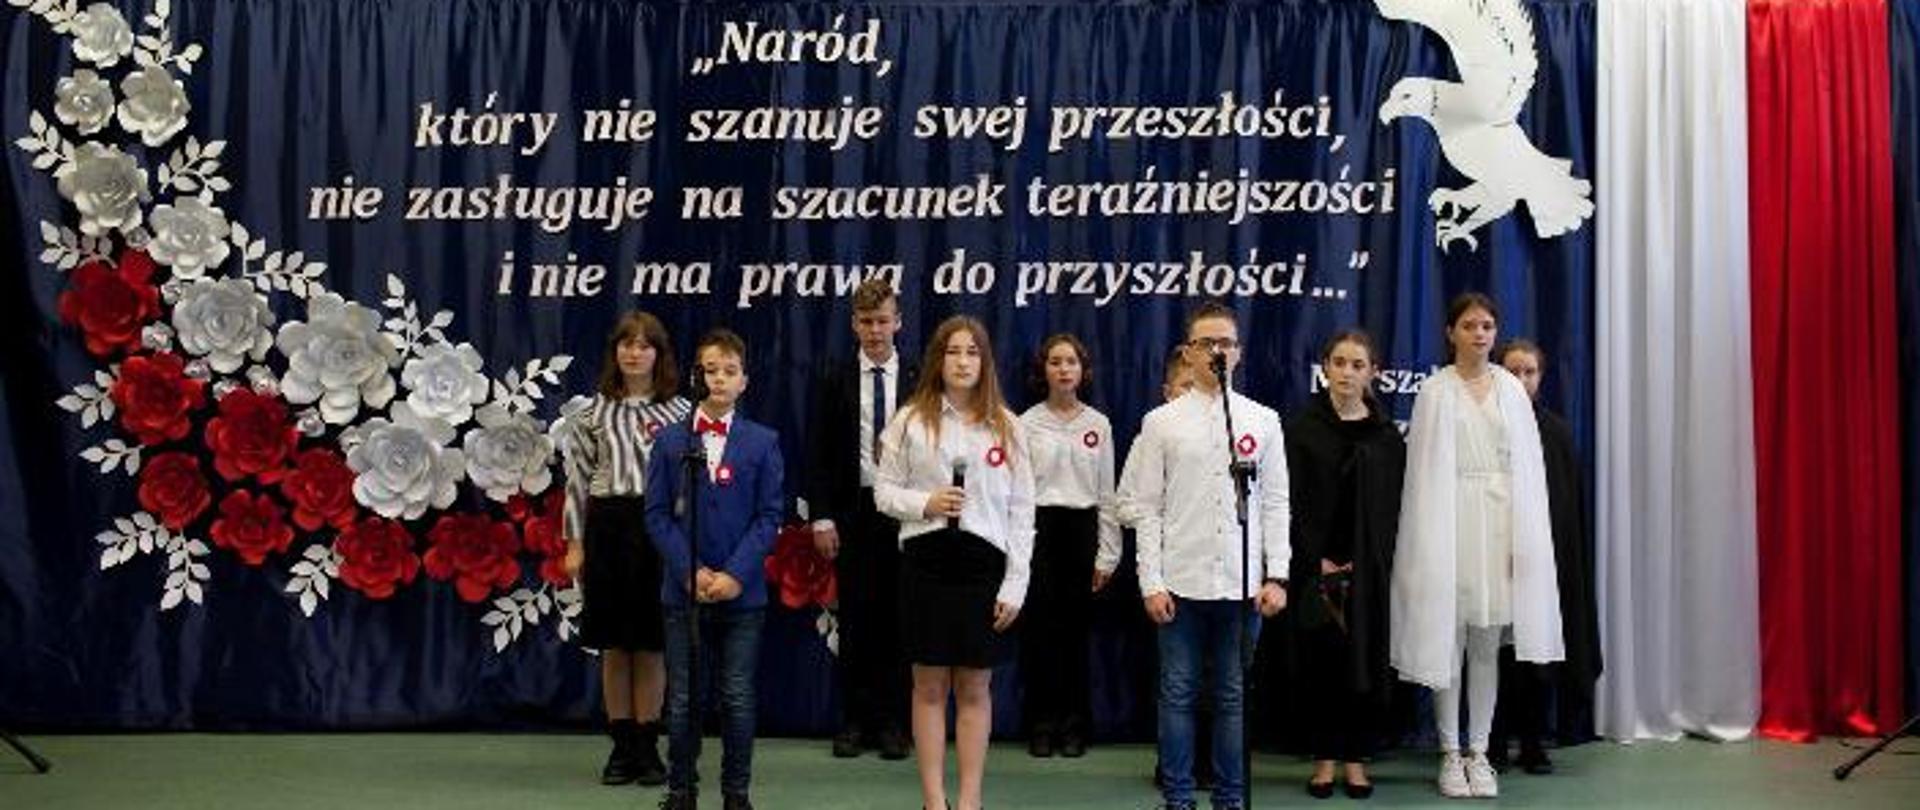 Zdjęcie przedstawia uczniów uczestniczących w akademii szkolnej. Uczniowie na tle sceny z biało-czerwonych kwiatów i cytatu J. Piłsudskiego oraz białego orła